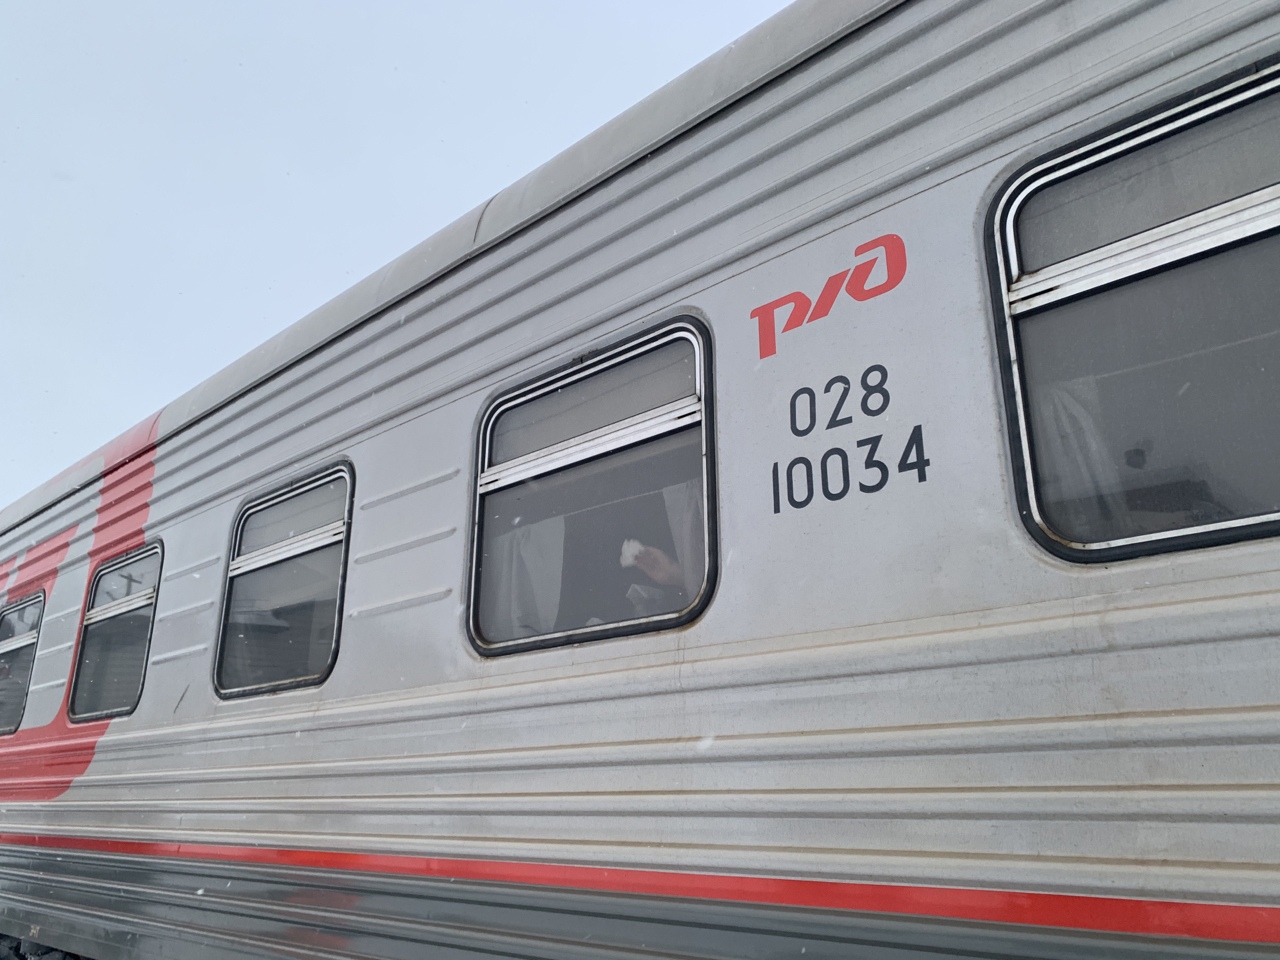 Из Сыктывкара отправится туристический поезд до Ярославля и Костромы